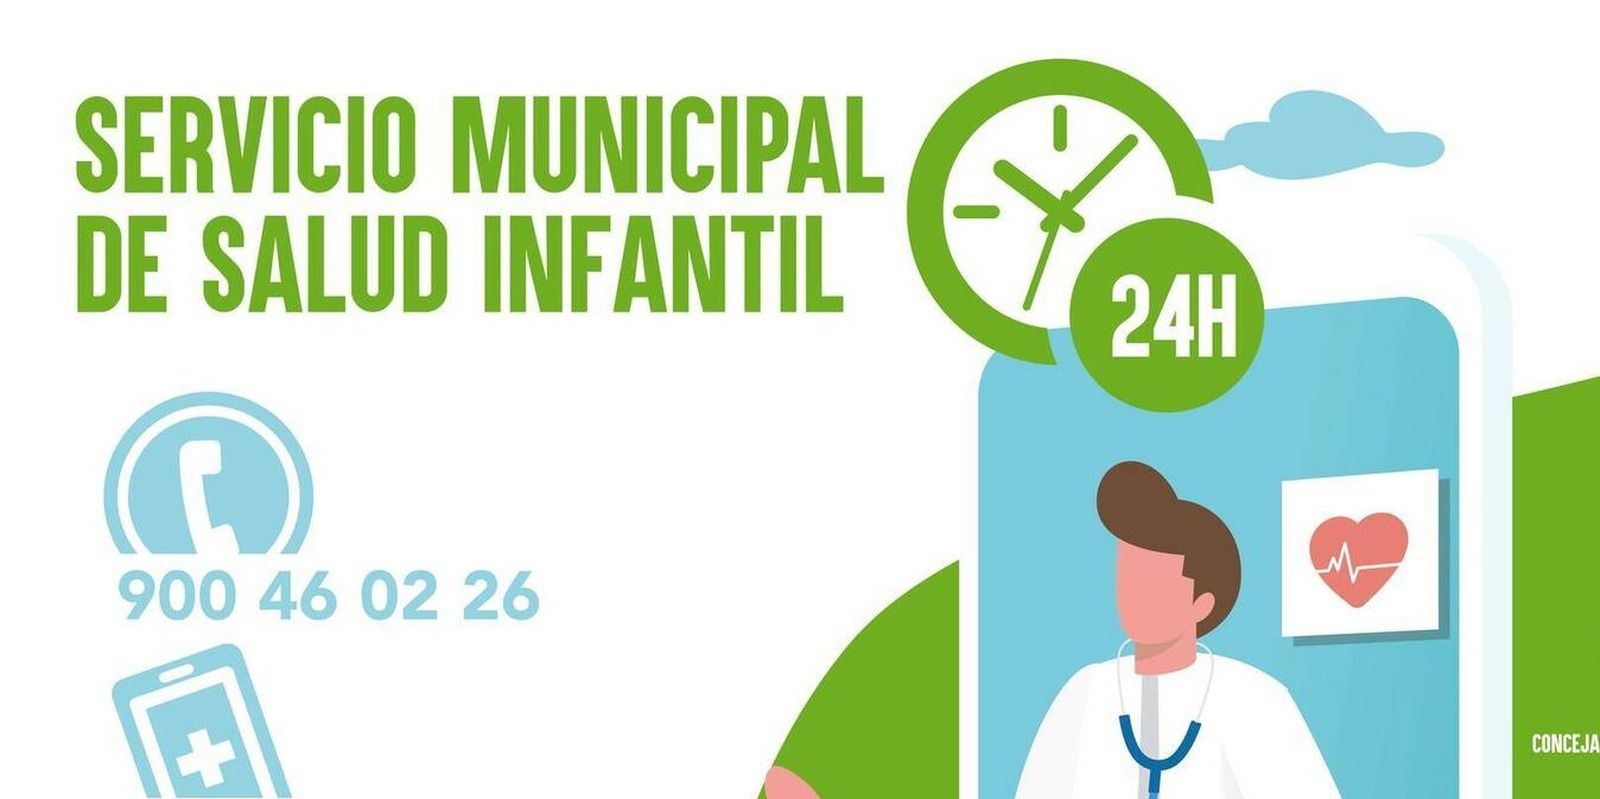 El Servicio Municipal de Salud Infantil de Boadilla atendió en 2020 un 52% más de consultas que el año anterior